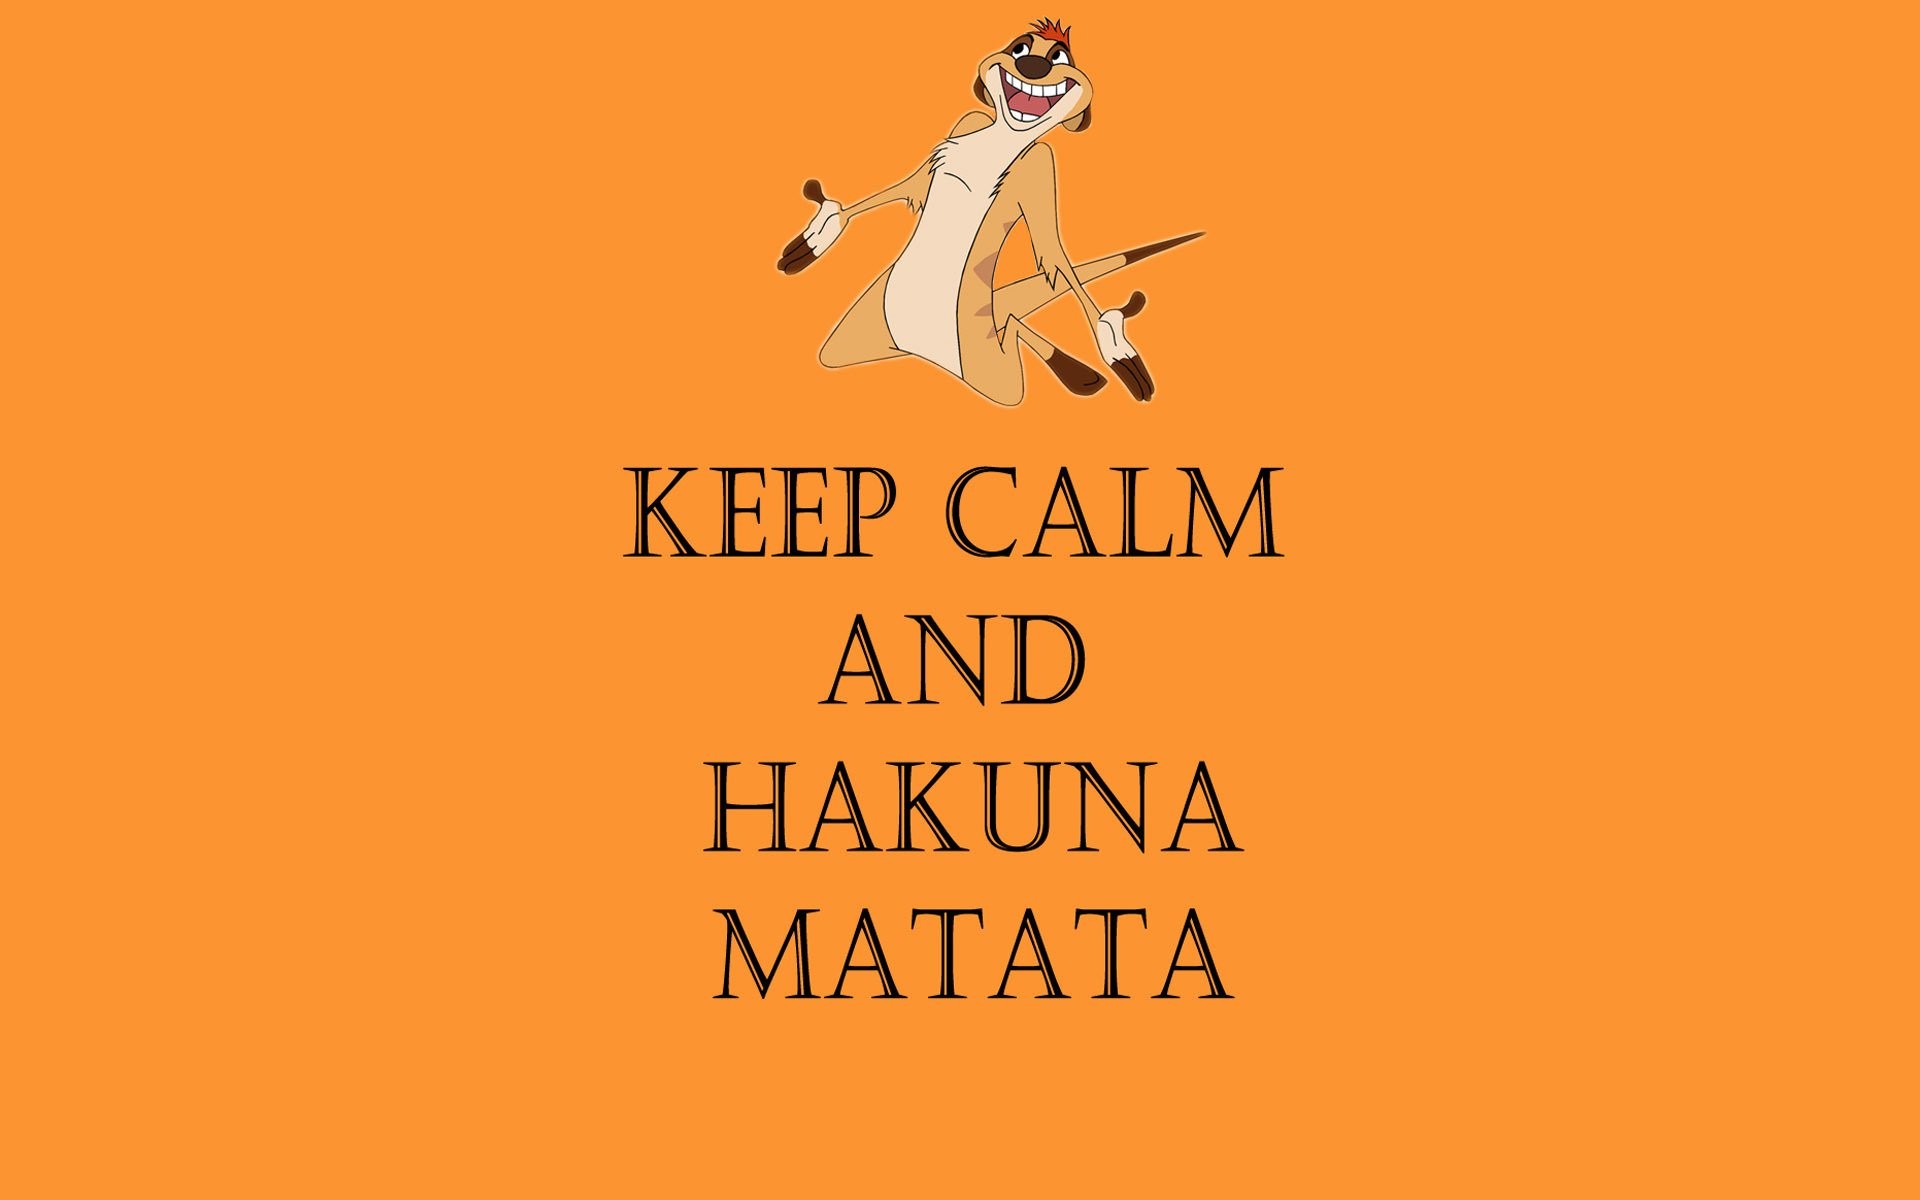 Акуна матата на английском. Акуна Матата. Акуна Матата обои. Hakuna Matata обои. Keep Calm and Hakuna Matata.